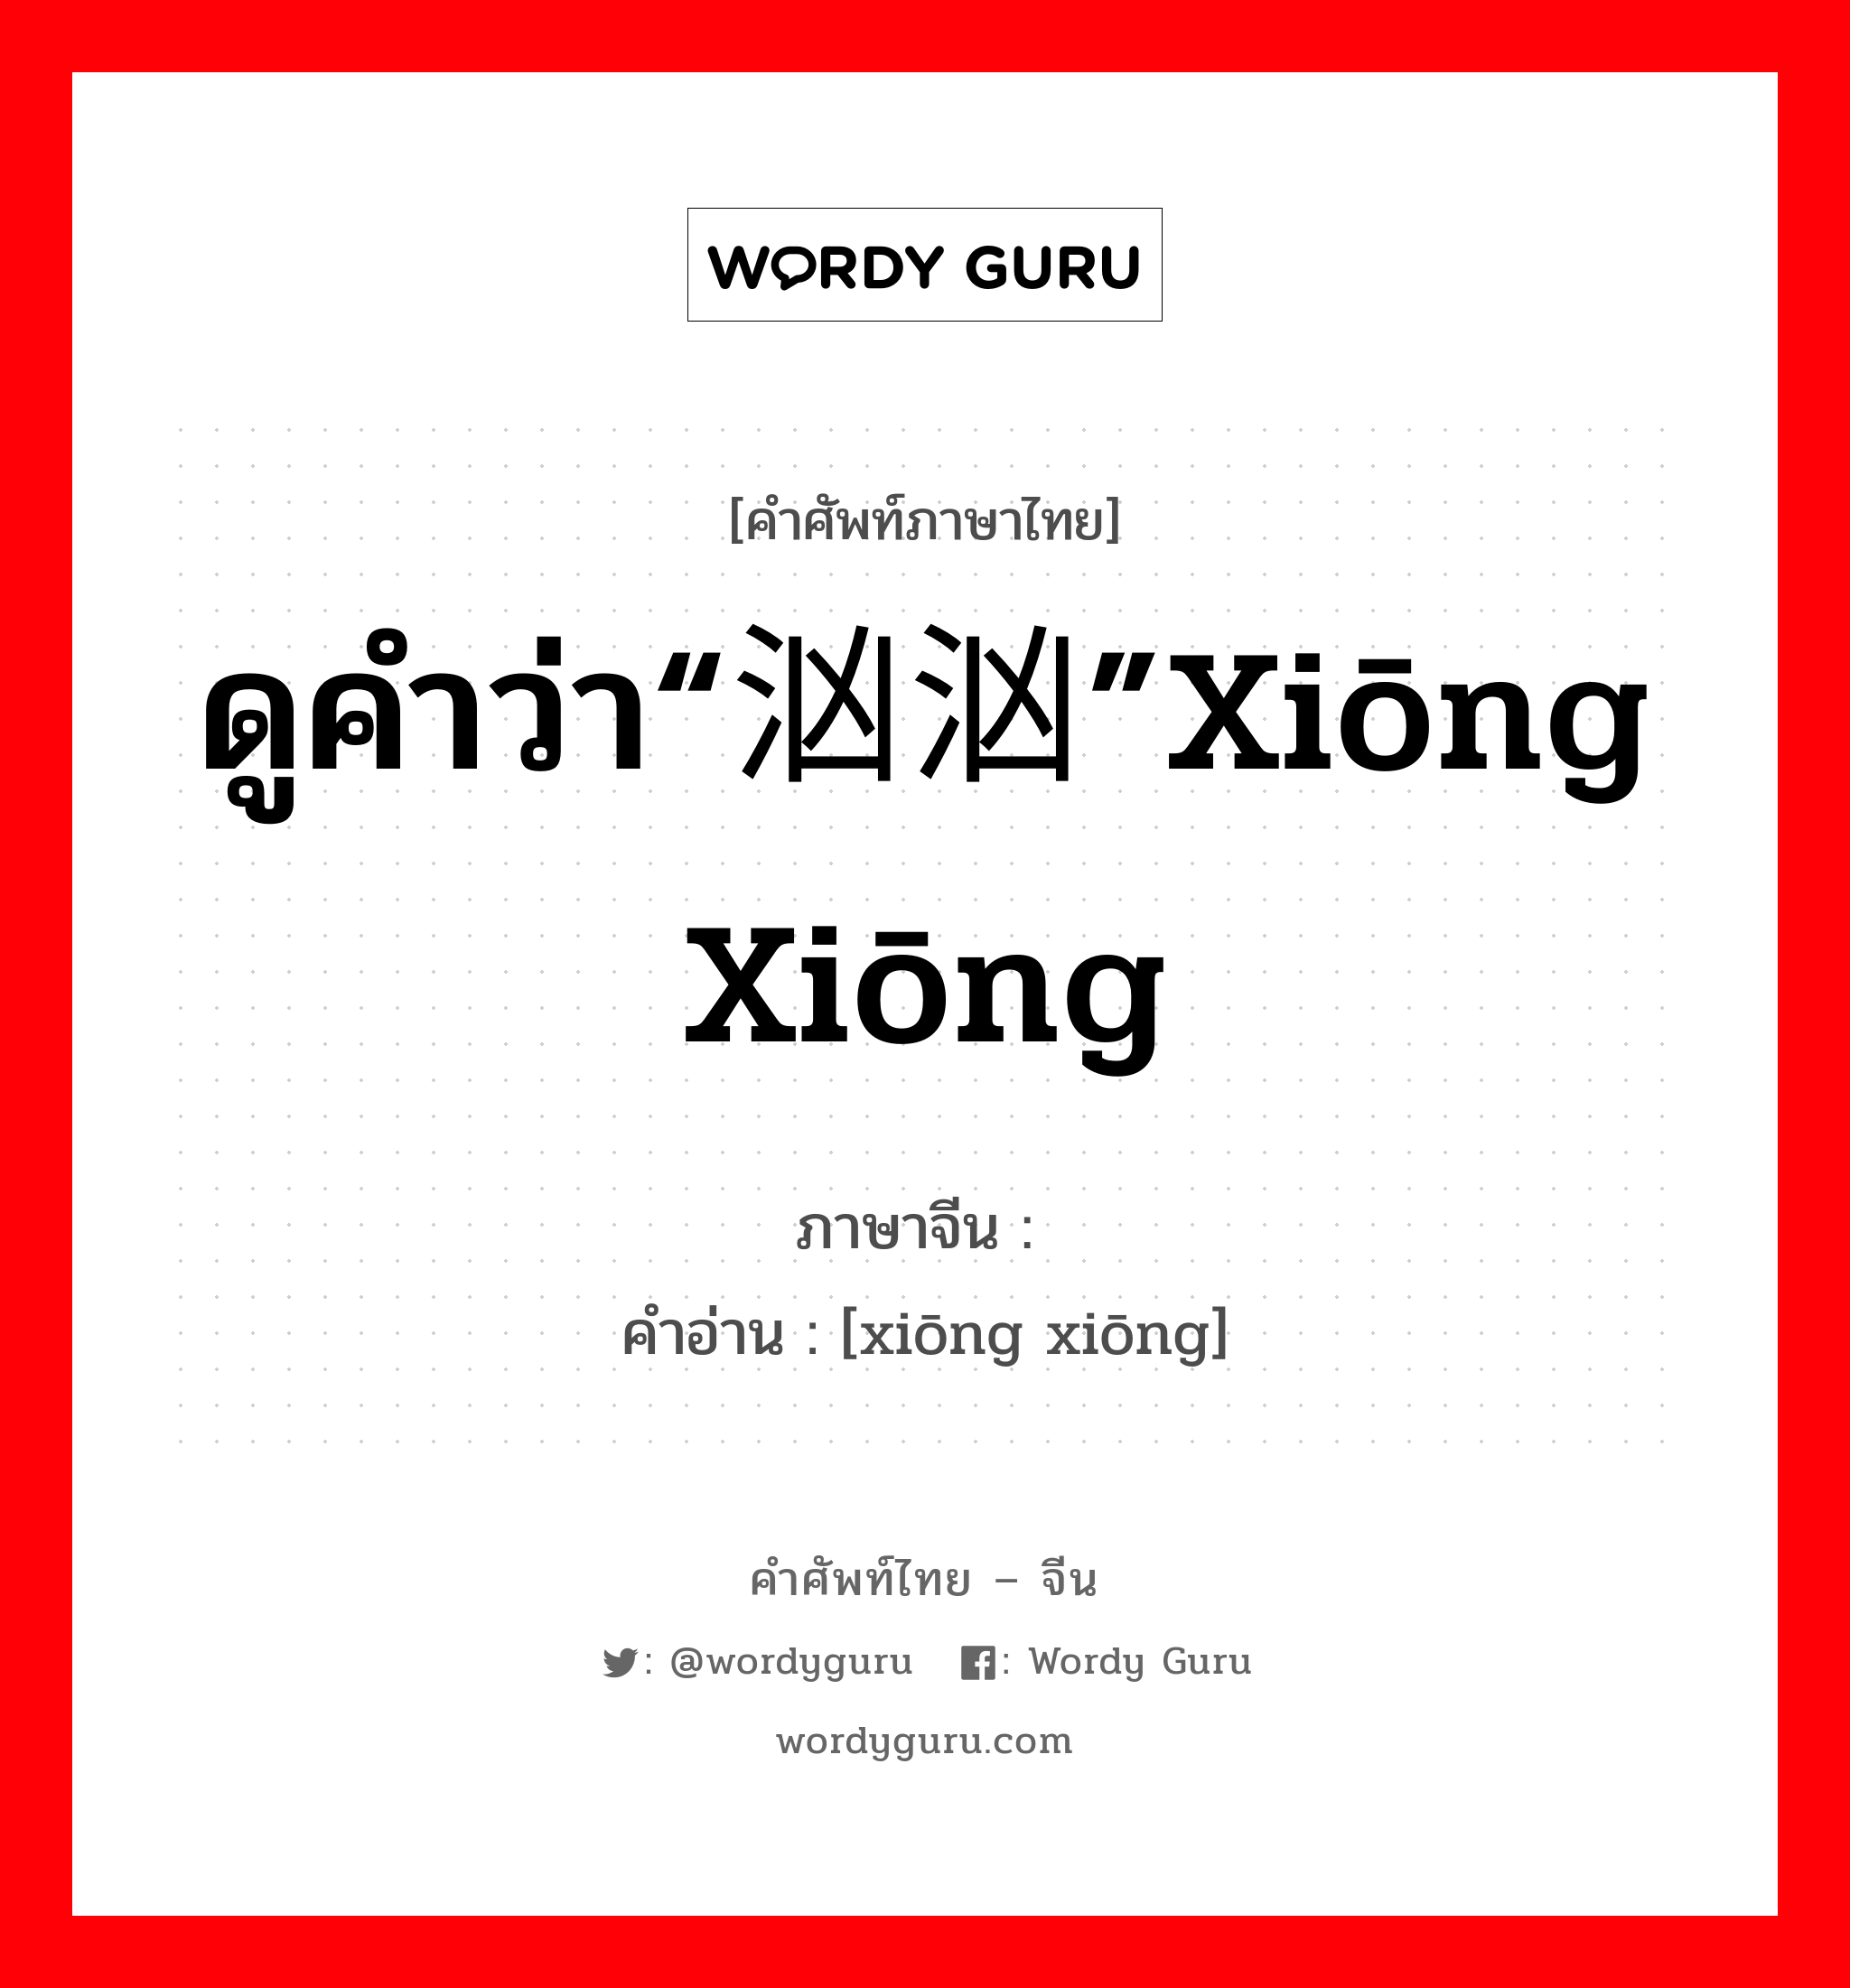 ดูคำว่า“汹汹”xiōng xiōng ภาษาจีนคืออะไร, คำศัพท์ภาษาไทย - จีน ดูคำว่า“汹汹”xiōng xiōng ภาษาจีน 讻讻 คำอ่าน [xiōng xiōng]